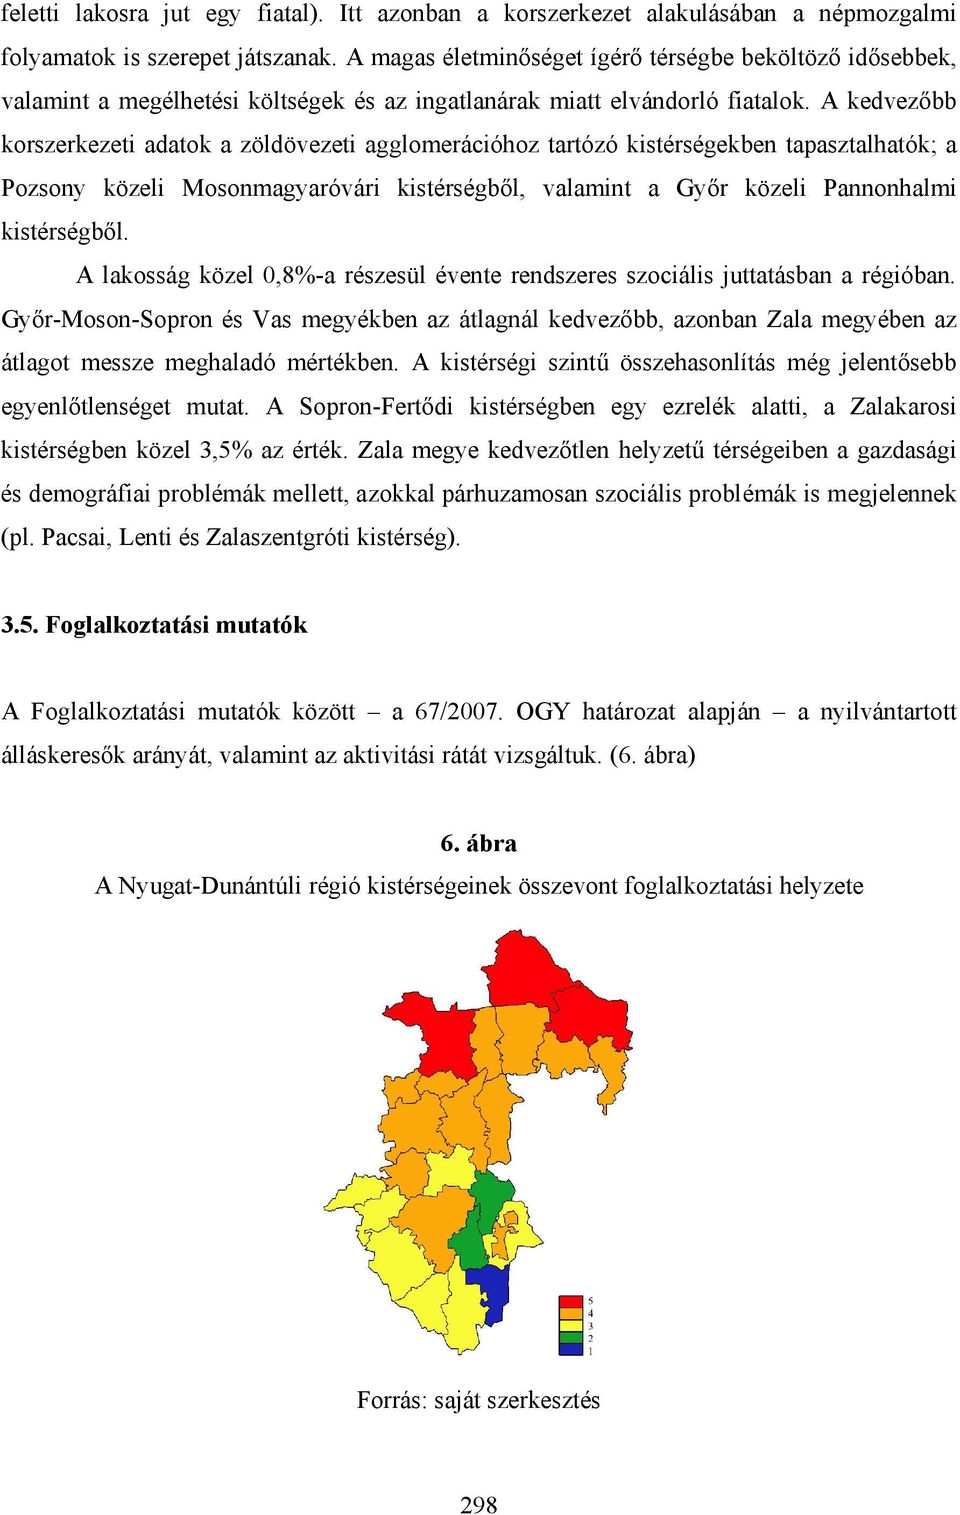 A kedvezőbb korszerkezeti adatok a zöldövezeti agglomerációhoz tartózó kistérségekben tapasztalhatók; a Pozsony közeli Mosonmagyaróvári kistérségből, valamint a Győr közeli Pannonhalmi kistérségből.